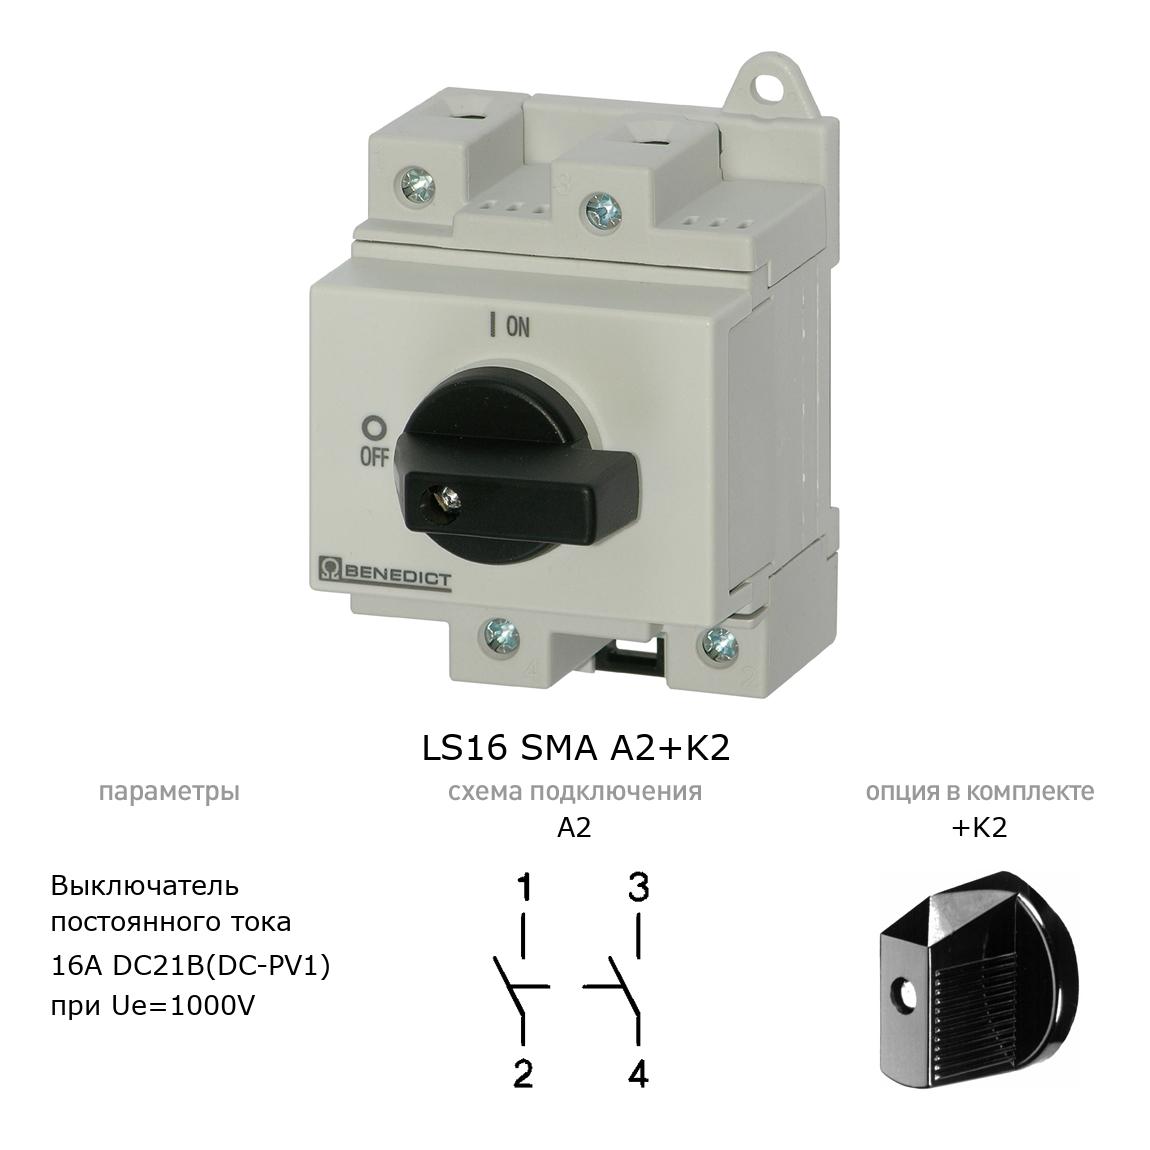 Кулачковый переключатель для постоянного тока (DC) LS16 SMA A2+K2 BENEDICT